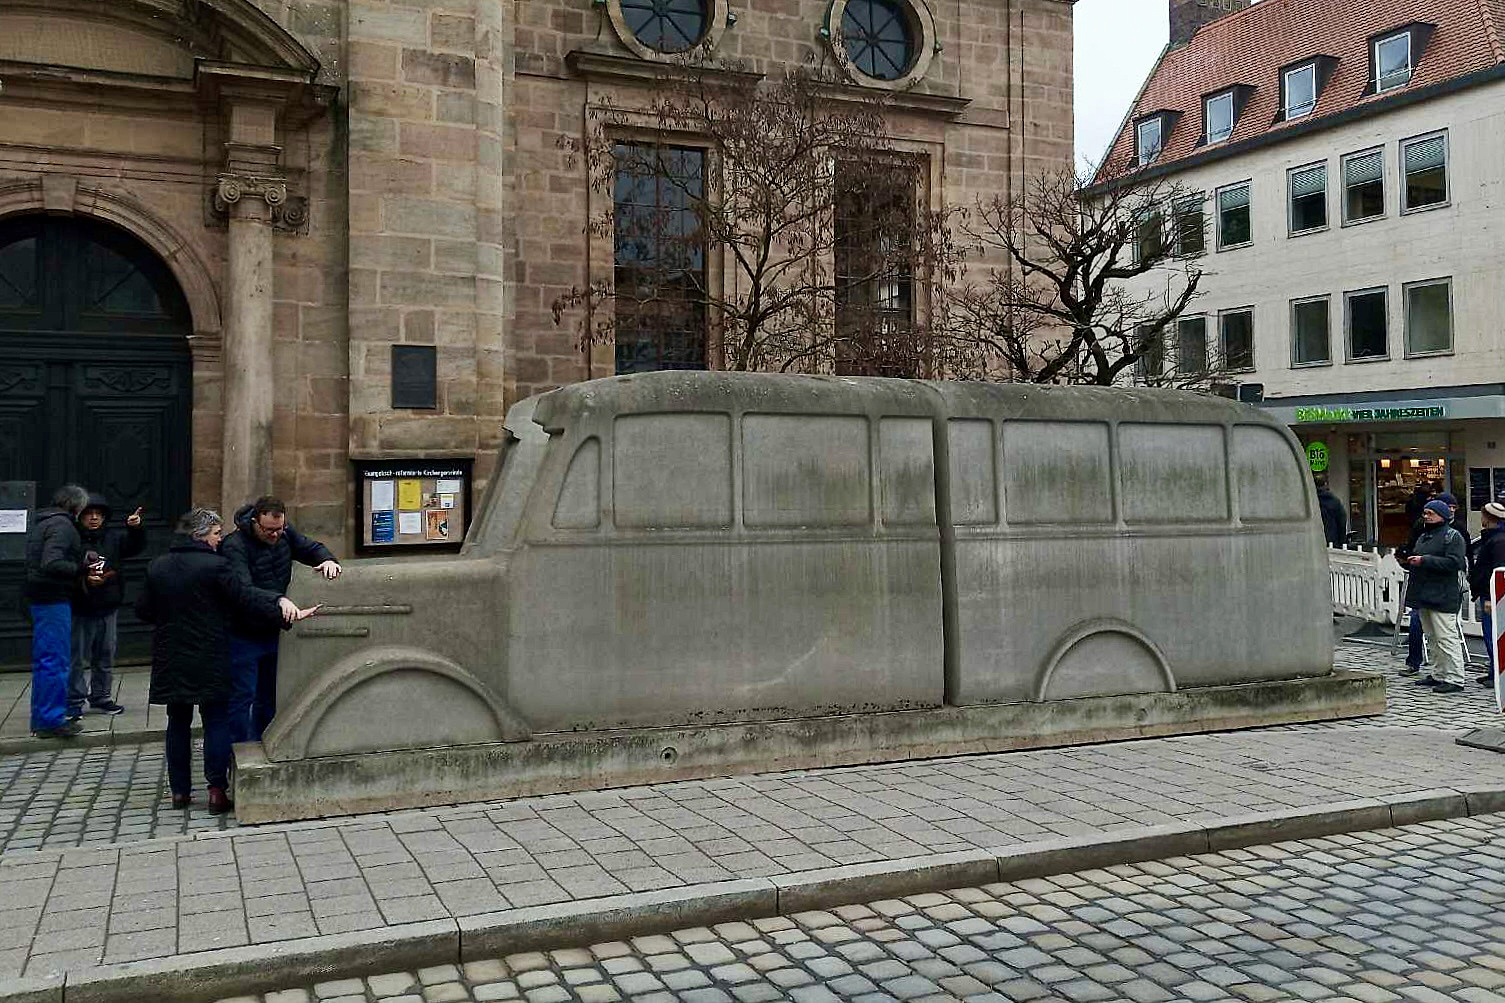 Das Denkmal der grauen Busse, eine mehrere Meter lange Nachbildung eines Omnibusses aus grauem Beton, steht auf gepflasterten Vorplatz einer Kirche. Links und rechts davon stehen Menschen.